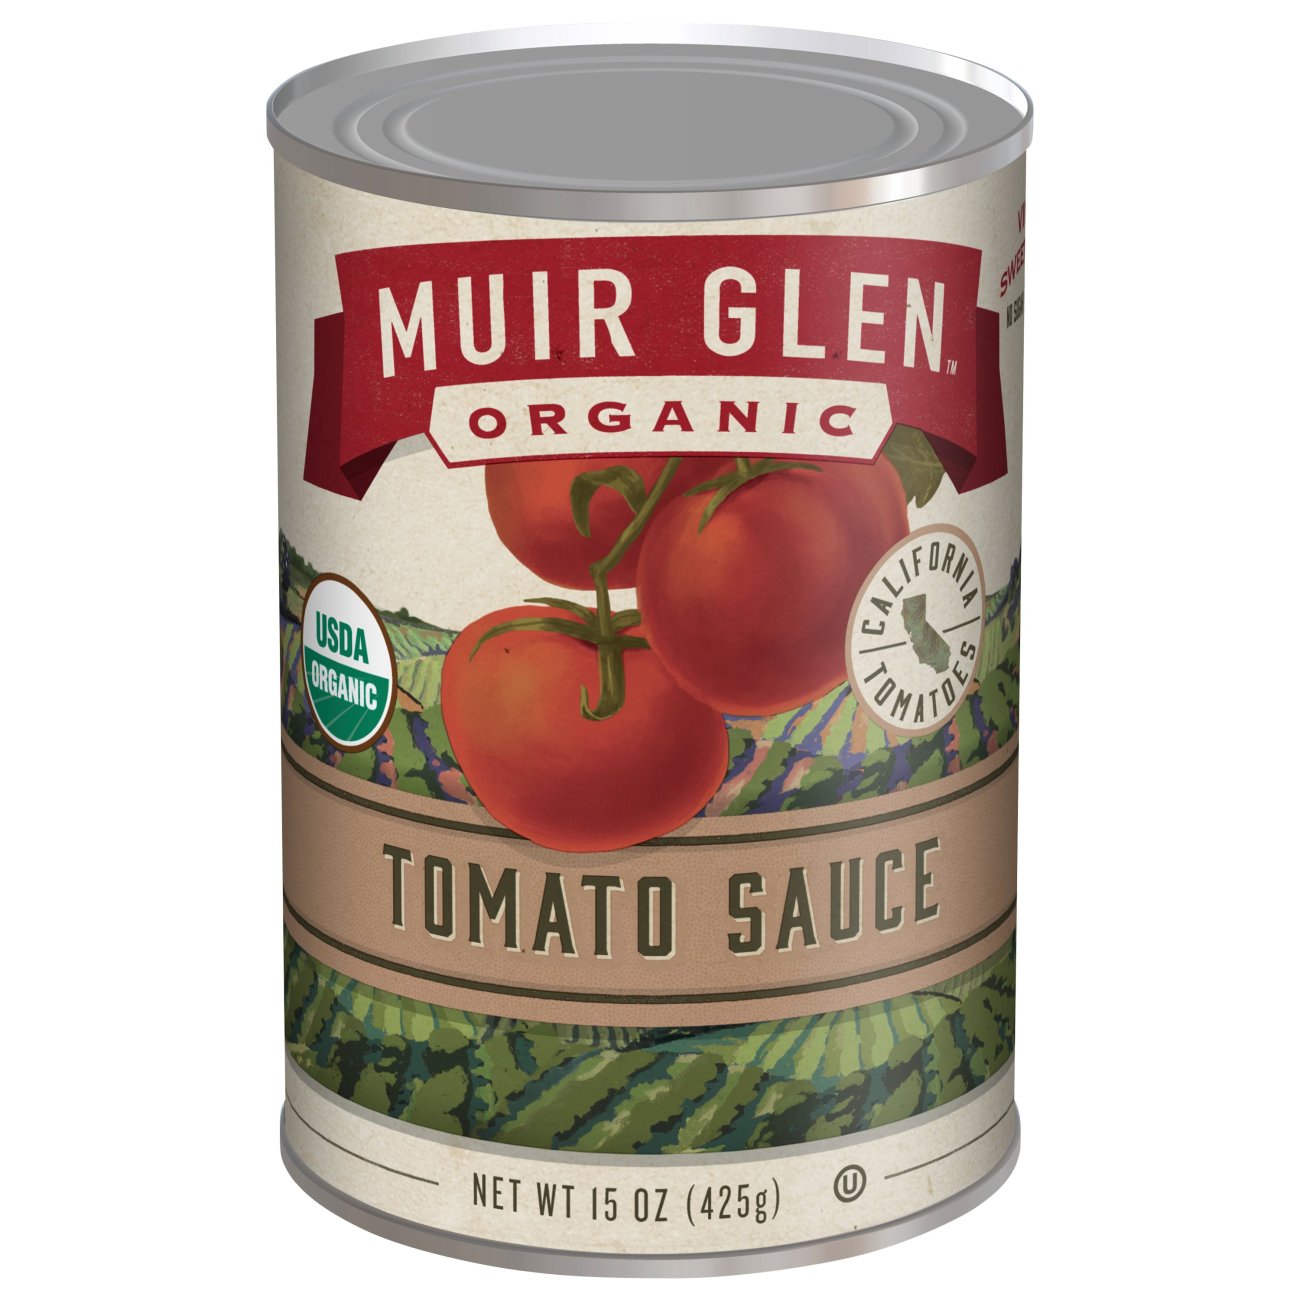 Muir Glen Organic Premium Tomato Sauce